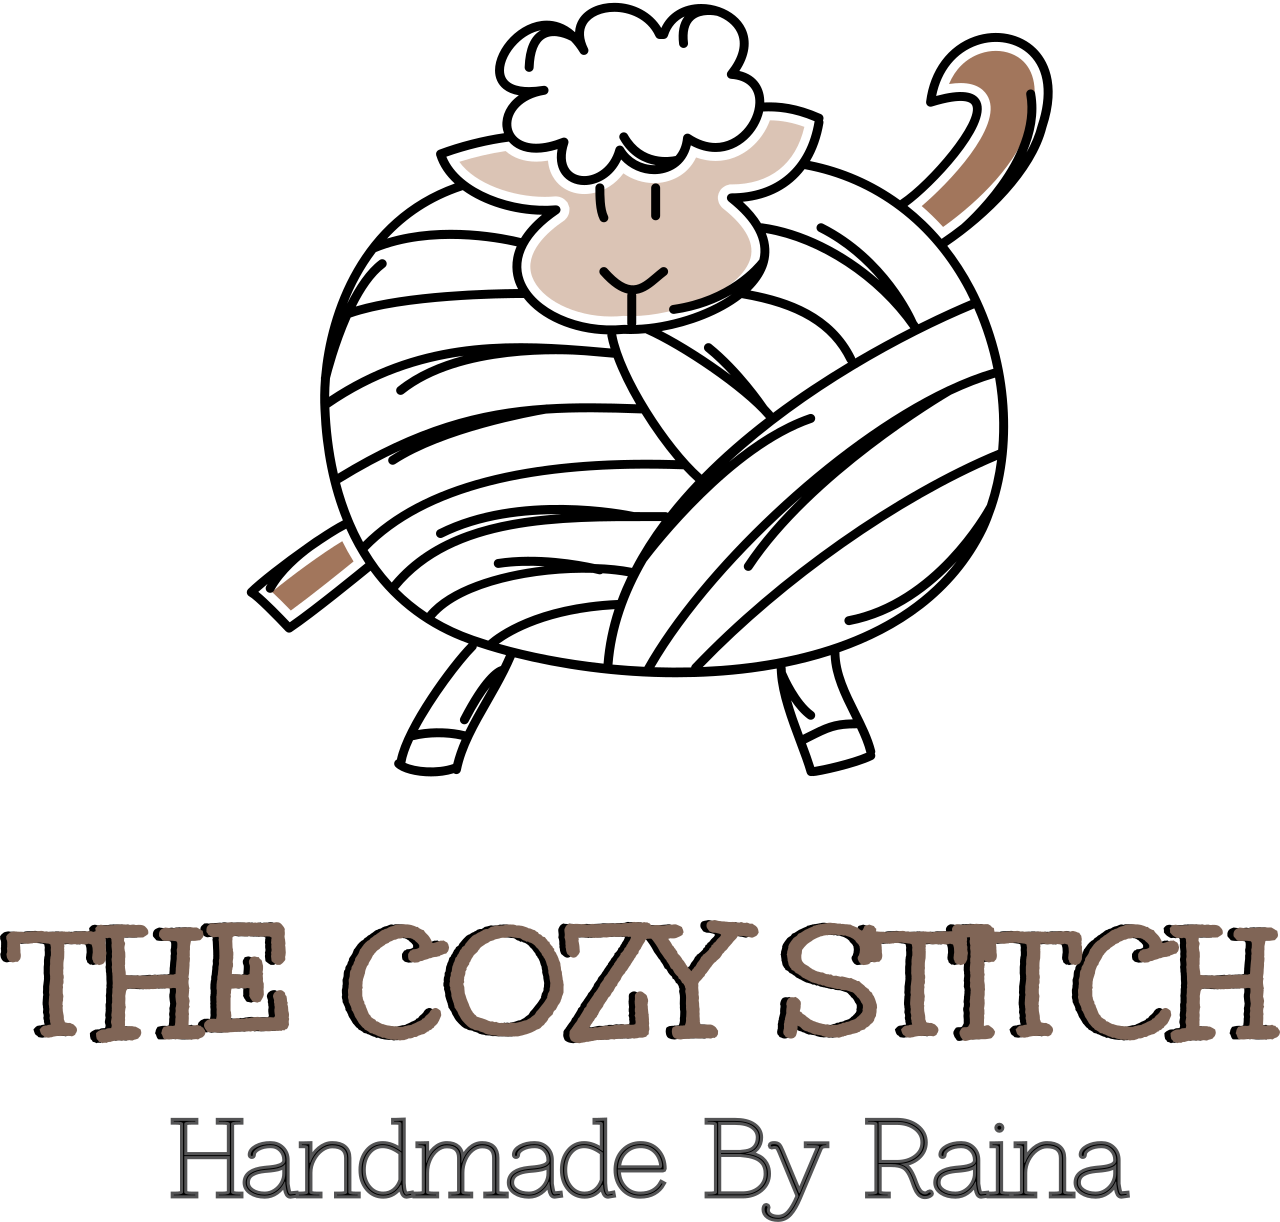 The cozy stitch's logo